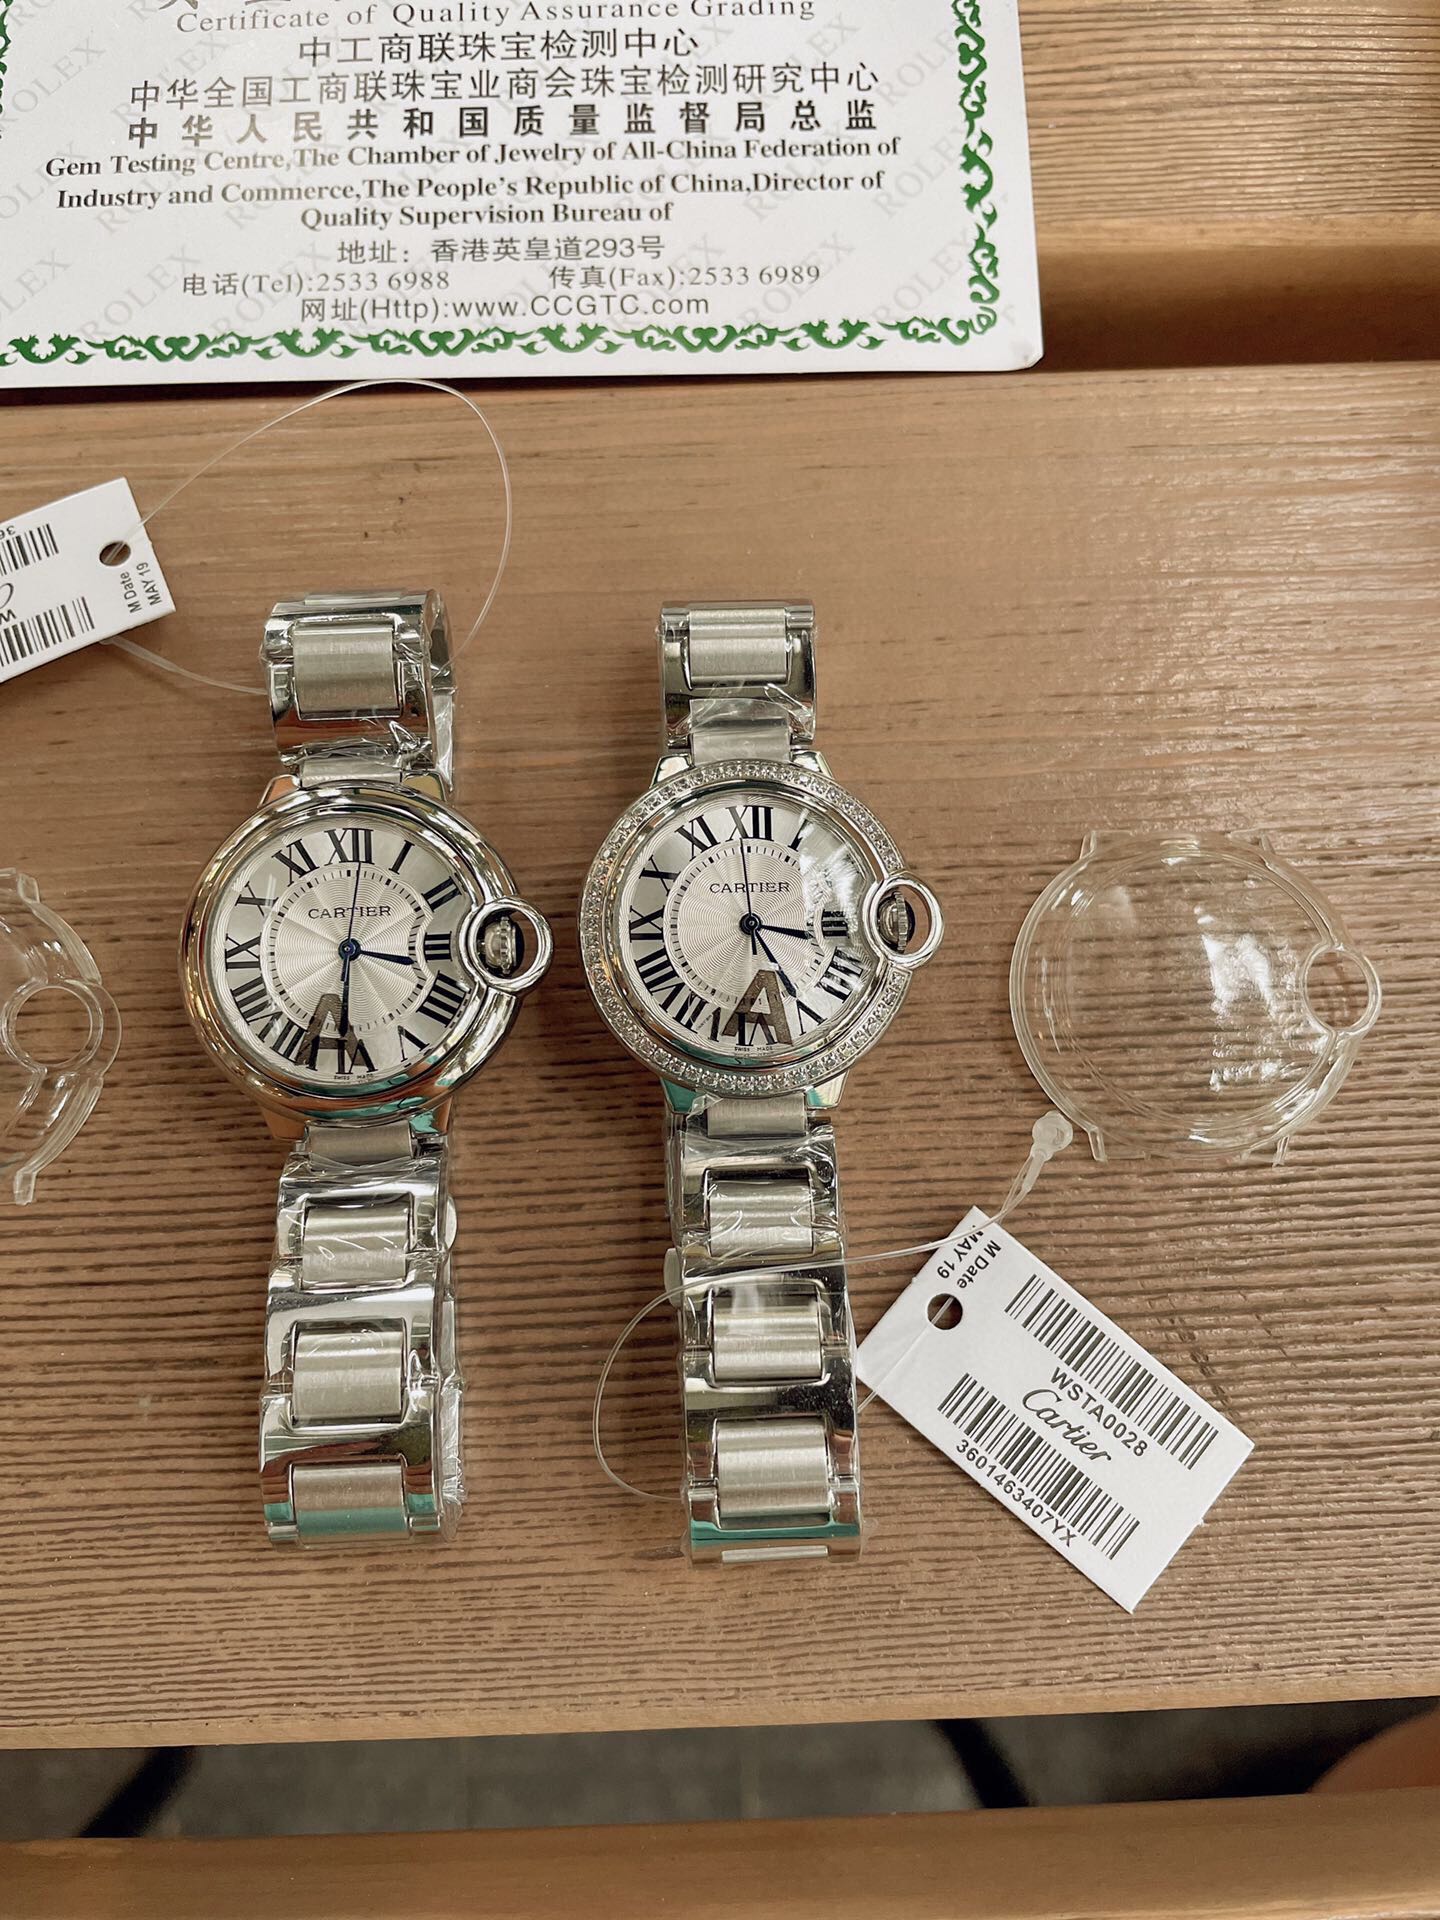 「ダイヤモンドある」CARTIERカルティエ 時計 中身コピー フランス 薄い腕時計 軽量 レディース 最新商品 キラキラ _1